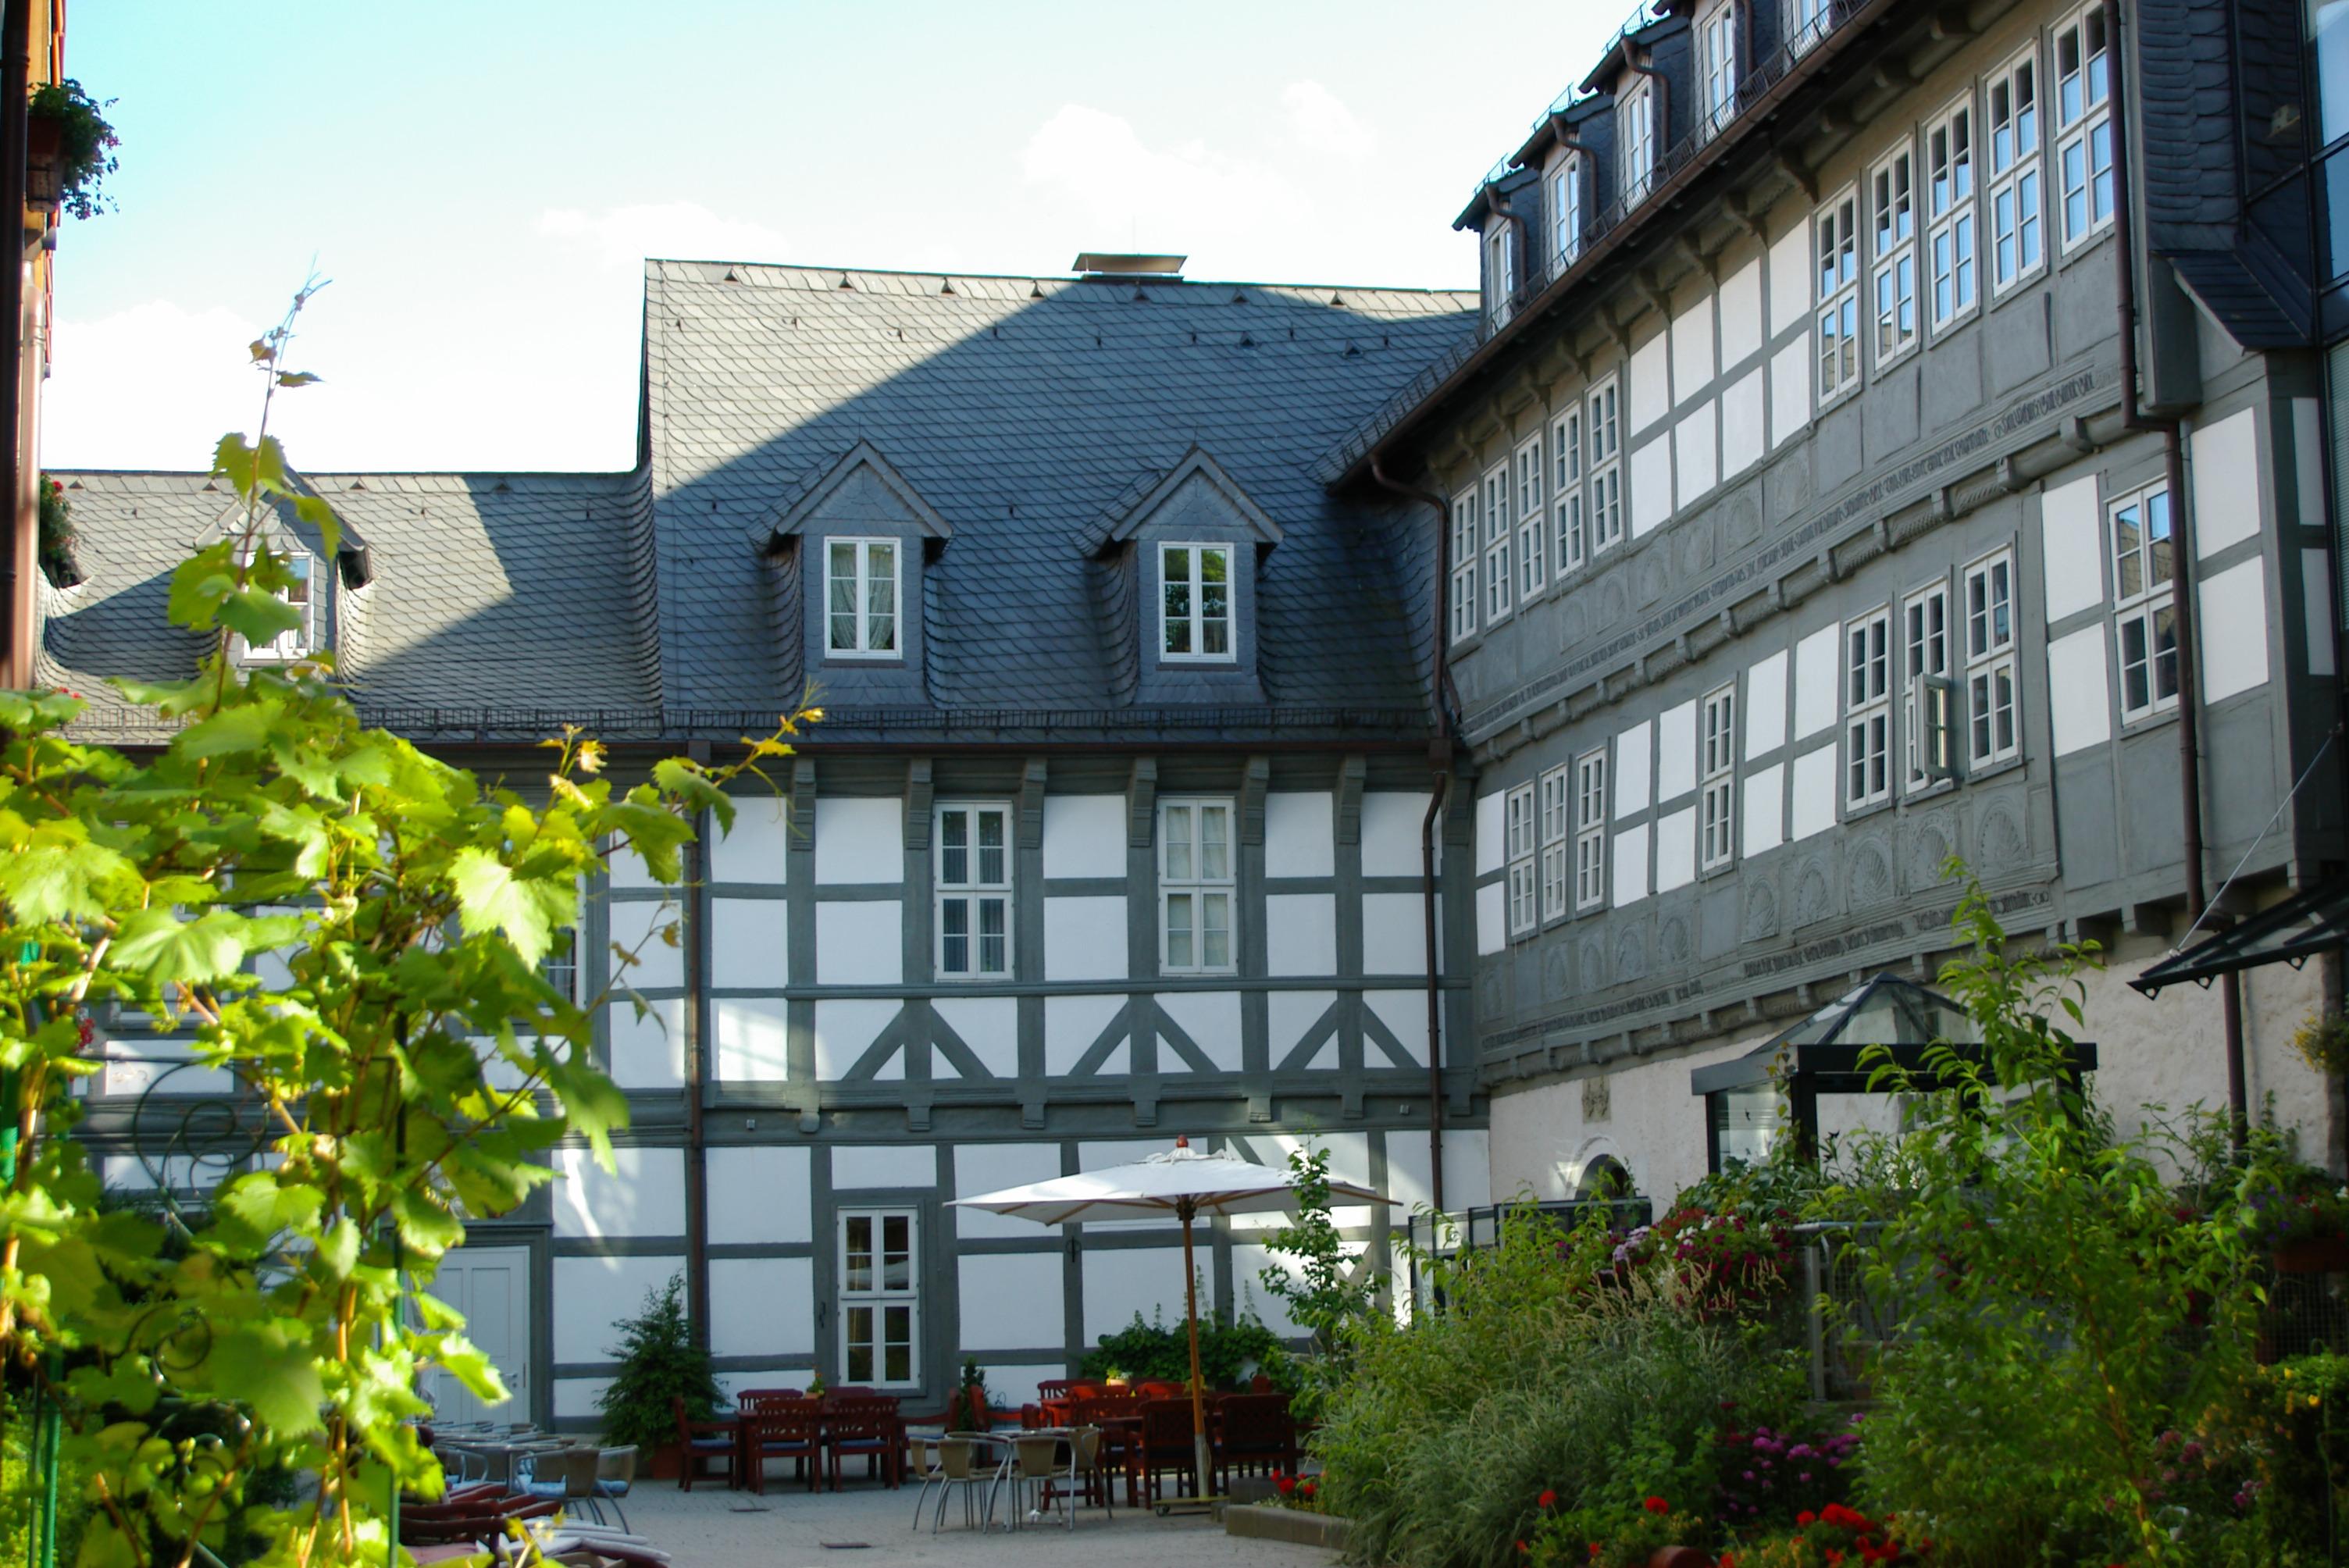 GDA Hotel Schwiecheldthaus - Nur 100 Schritte vom historischen Marktplatz entfernt.